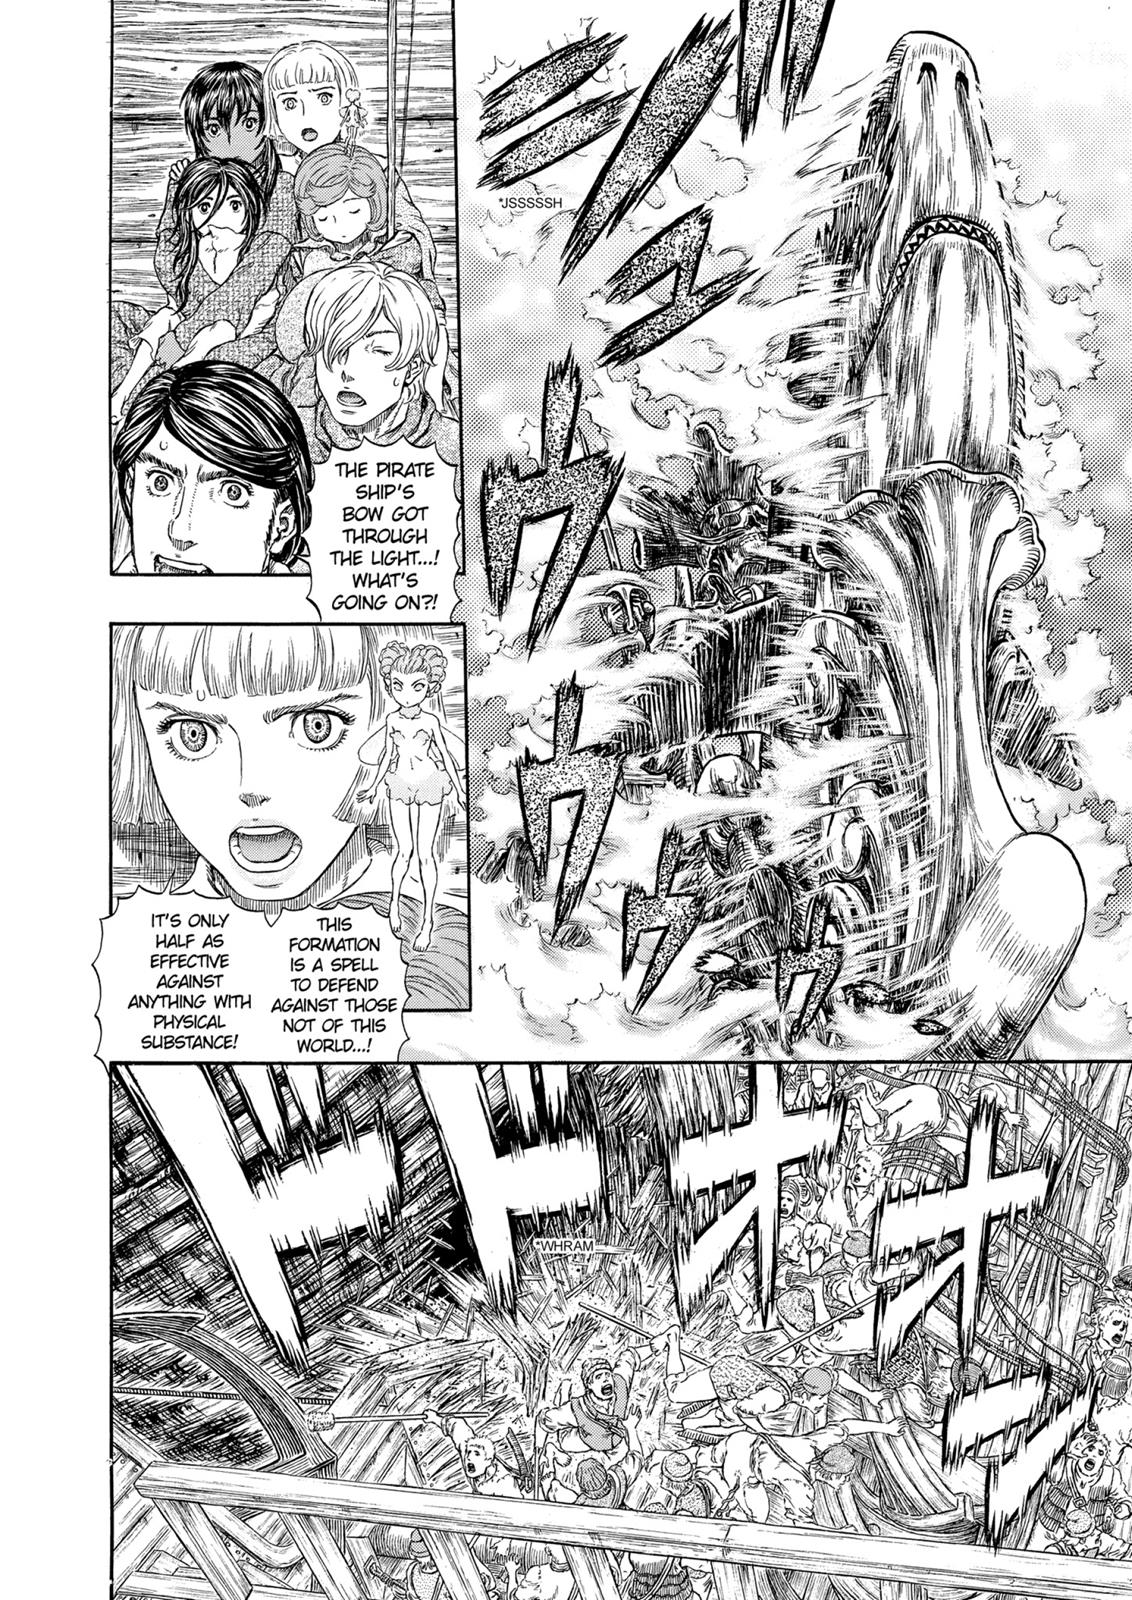 Berserk Manga Chapter 321 image 06